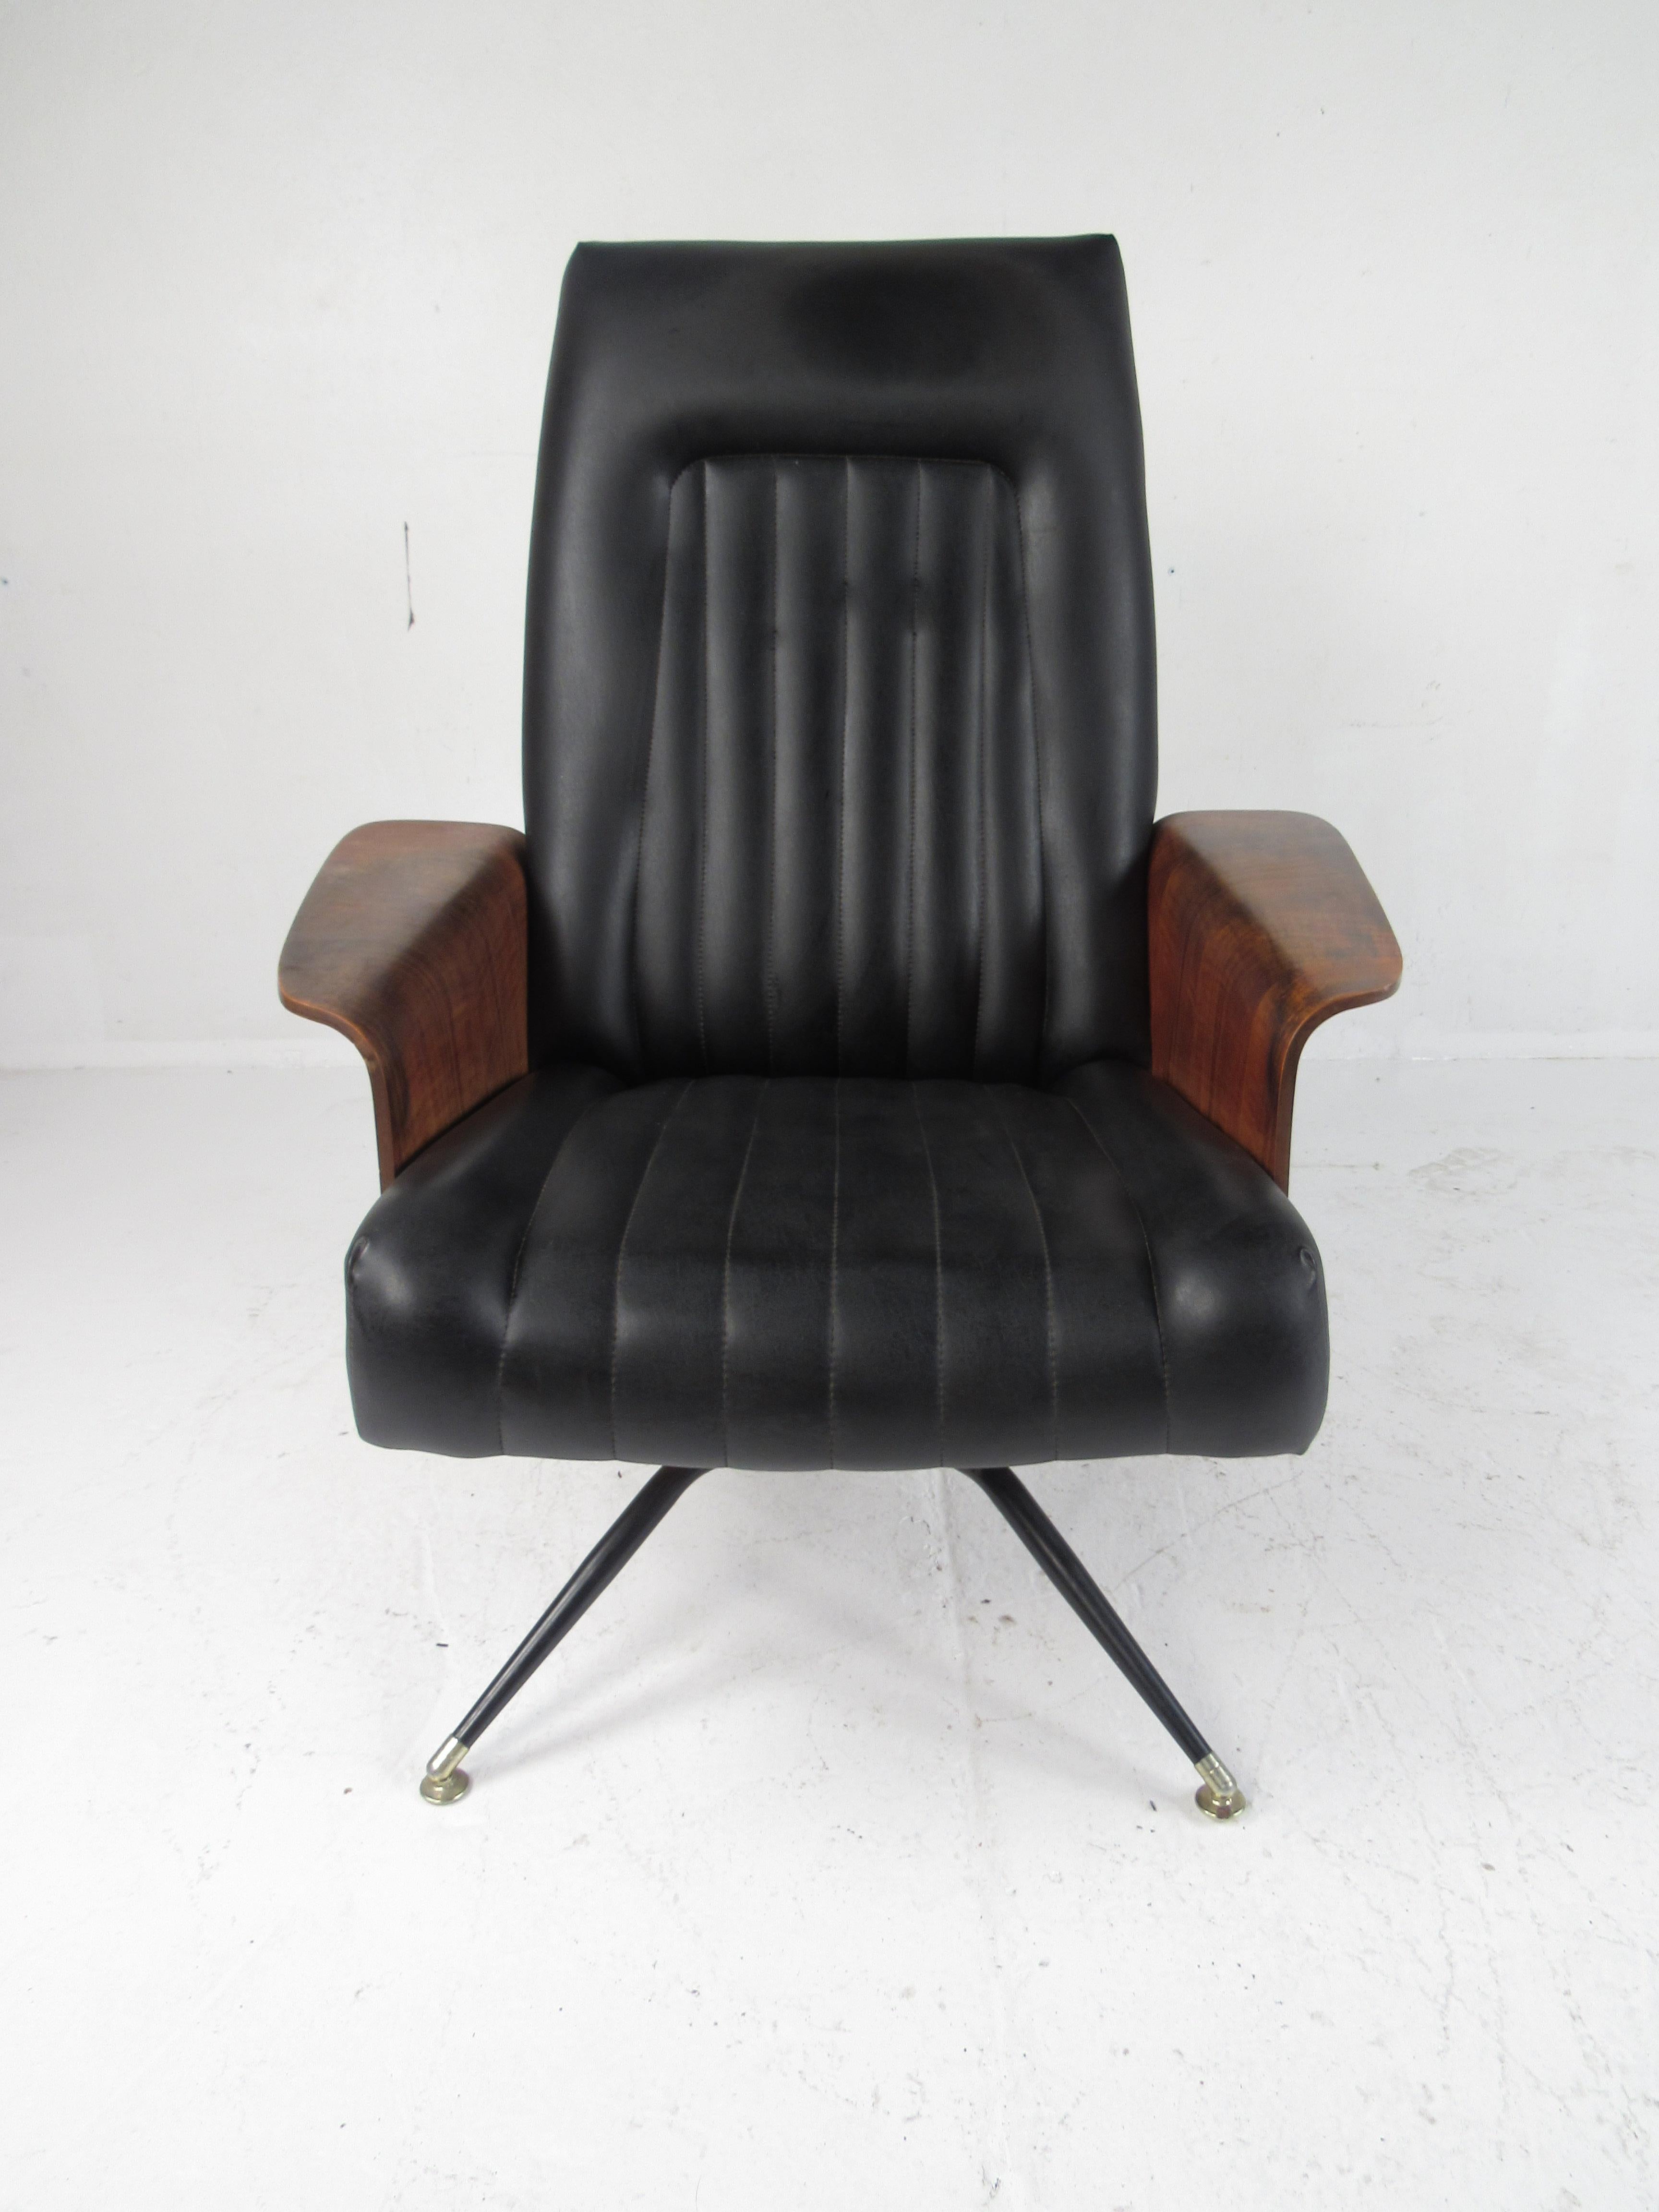 Une superbe chaise longue des années 1960 par Murphy Miller. Ce fauteuil de salon pivotant légèrement usagé est doté d'accoudoirs ailés en noyer et d'un revêtement en vinyle. Un bijou vintage qui possède une base métallique pivotante inhabituelle